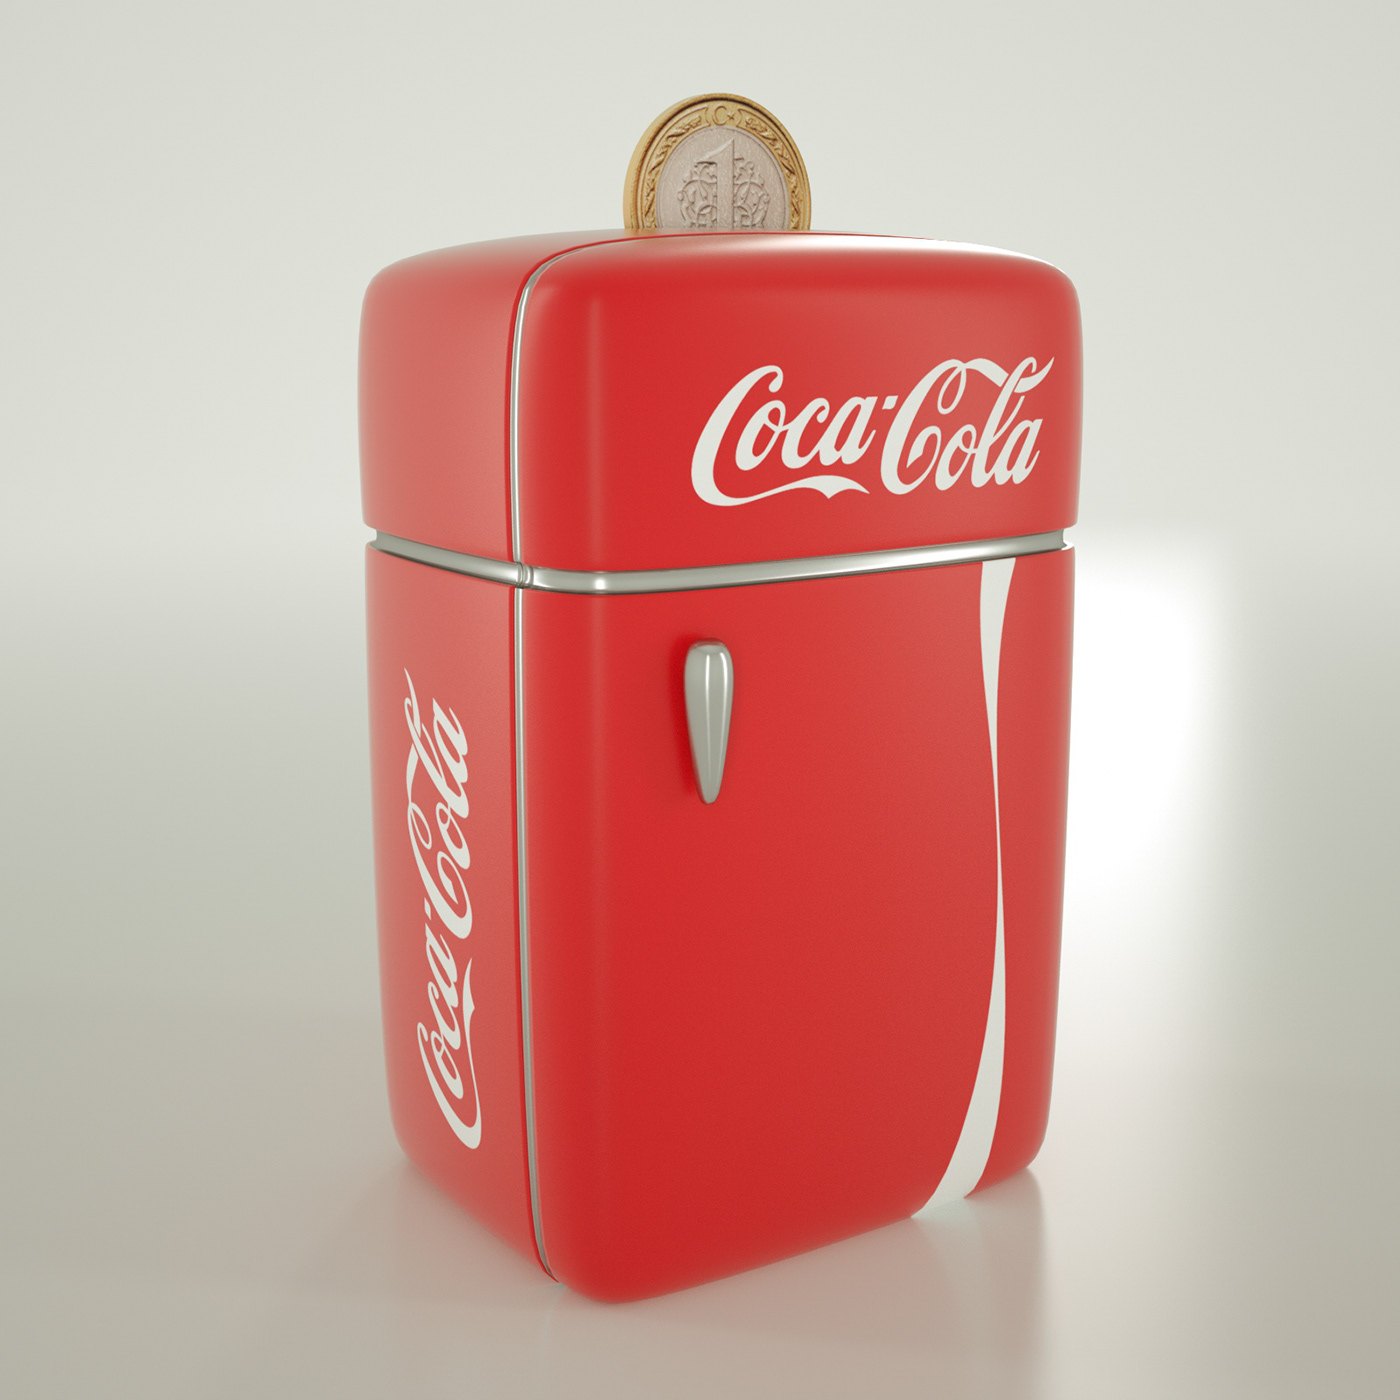 cocacola coke cola moneybox